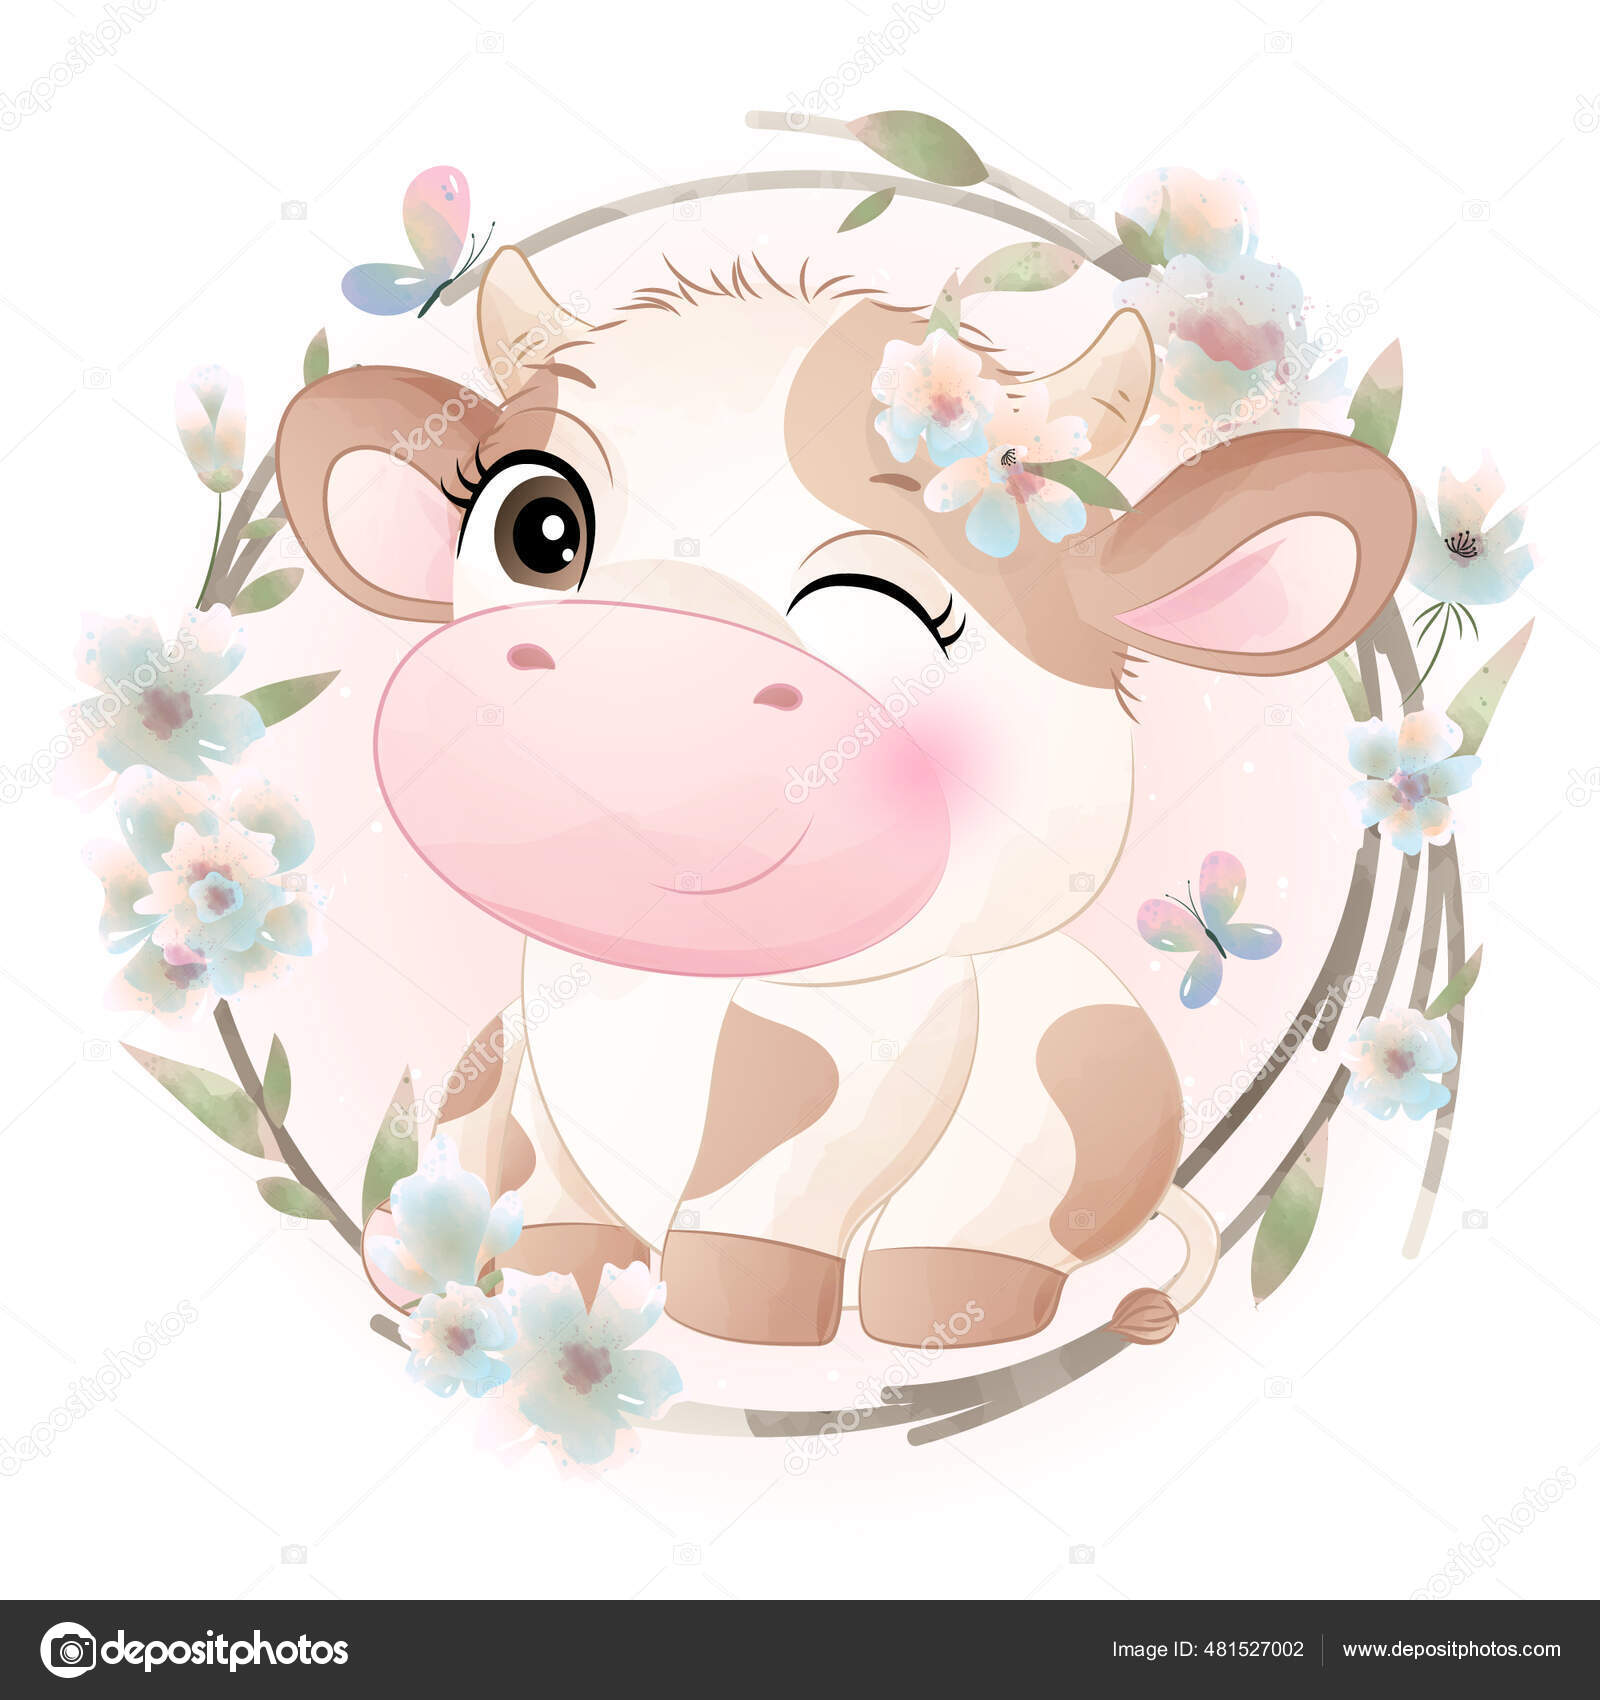 vaca kawaii colorida em belo estilo em fundo branco. ilustração